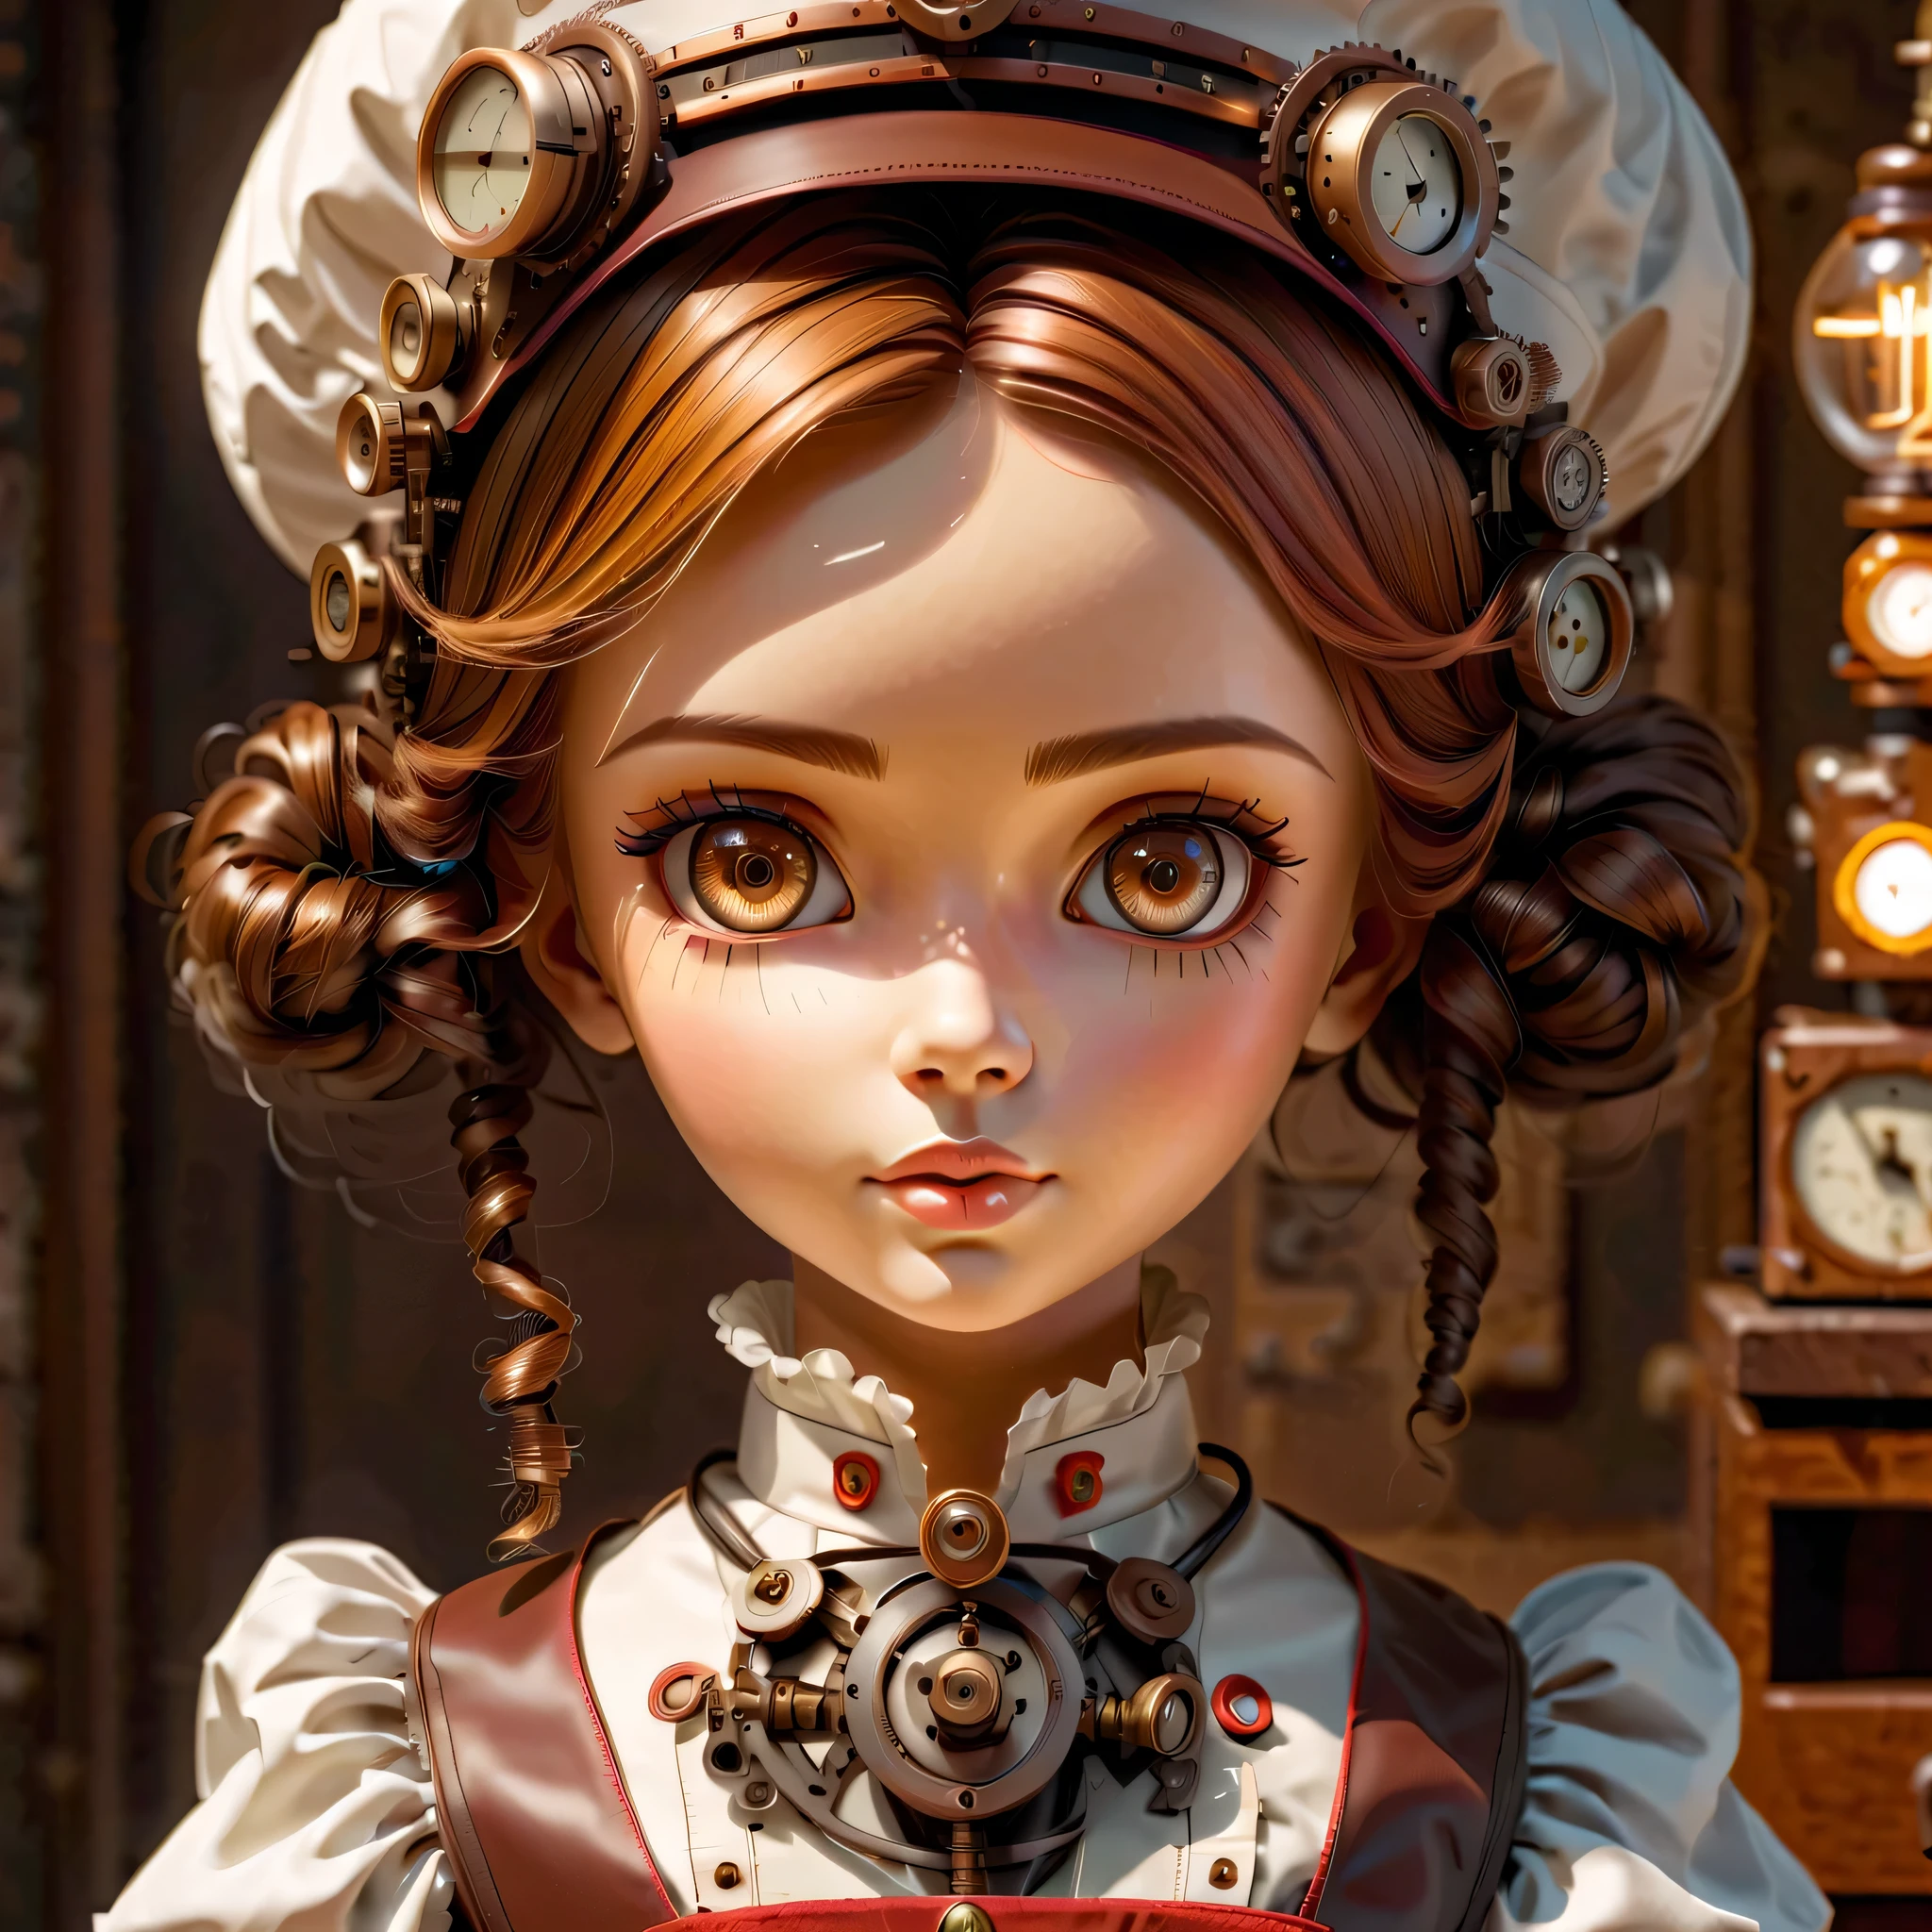 آلية:android:ممرضة:16th century European ممرضة uniform,دمية الوجه:وجه مثالي:عيون بنية كبيرة,رمشة عين,إخفاء أسلاك الشعر,إنها مصنوعة من الآلات,عنصر Steampunk,ميكانيكي engineering,ميكانيكيly,ميكانيكي,البوب,لطيف,تفاصيل معقدة,جيد جدا,دقة عالية,جودة عالية,最جودة عالية,بوضوح,كن واضحا,الضوء والظل الجميل,ثلاثة أبعاد,مظهر رائعتين,التكوين المعقد,آلية,متحرك,مشغول,اعمل بجد,تعبير يجعلك ترغب في دعمه,معدات طبية,رف الإمدادات الطبية,قارورة,أظهر الدليل على أنها آلة,ضوء من النافذة,ورقة تصميم الشخصيات